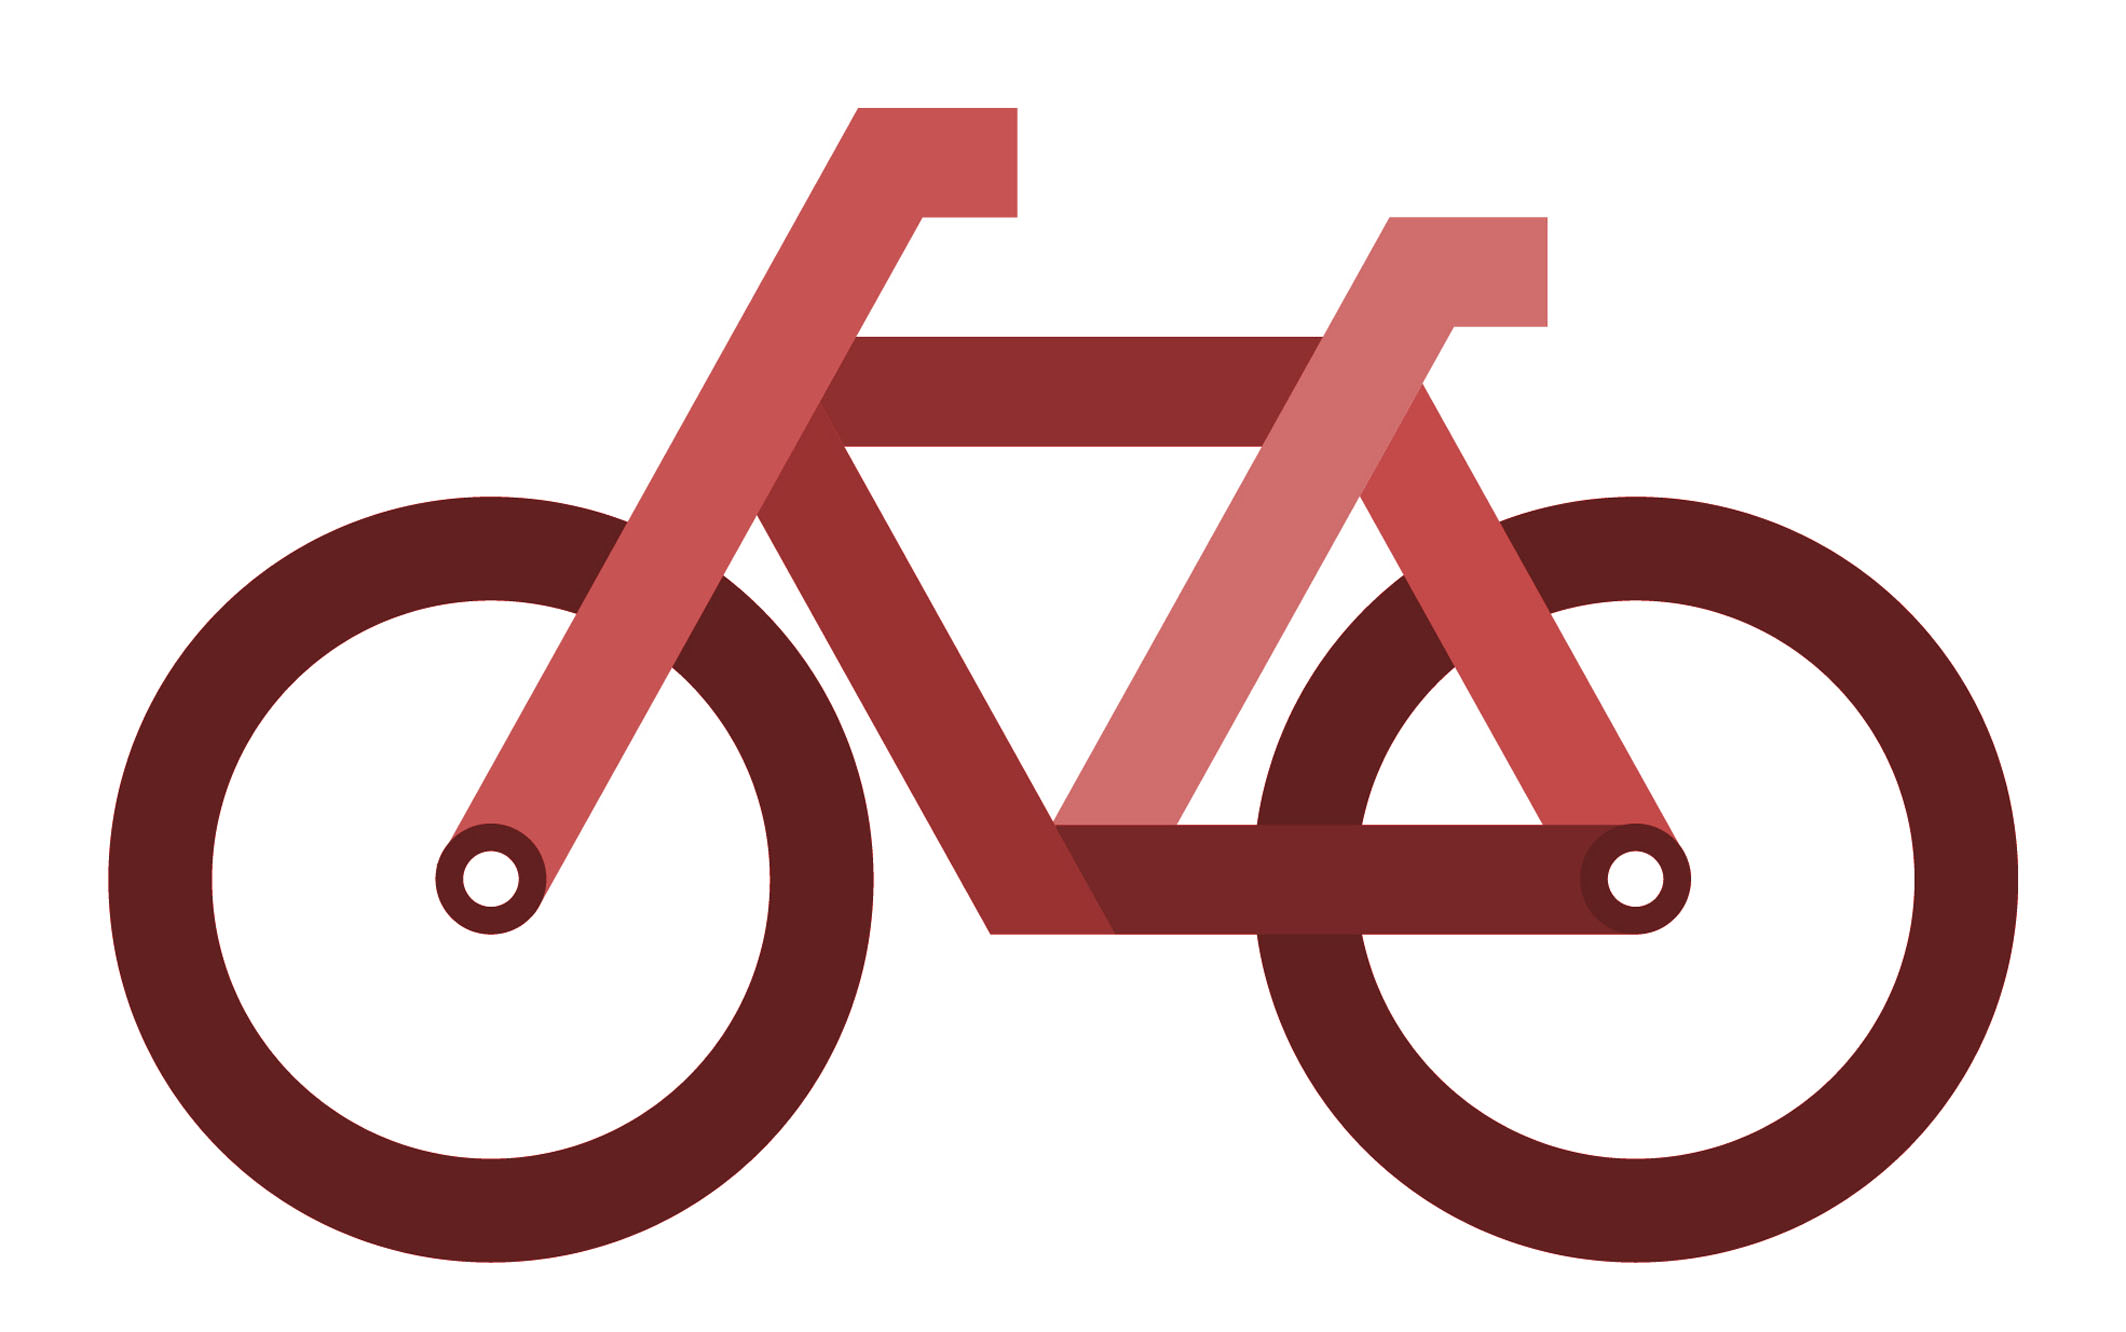  Lei de iniciativa parlamentar que institui poltica de incentivo ao uso da bicicleta<a style='float:right;color:#ccc' href='https://www3.al.sp.gov.br/repositorio/noticia/N-02-2014/fg159121.jpg' target=_blank><i class='bi bi-zoom-in'></i> Clique para ver a imagem </a>